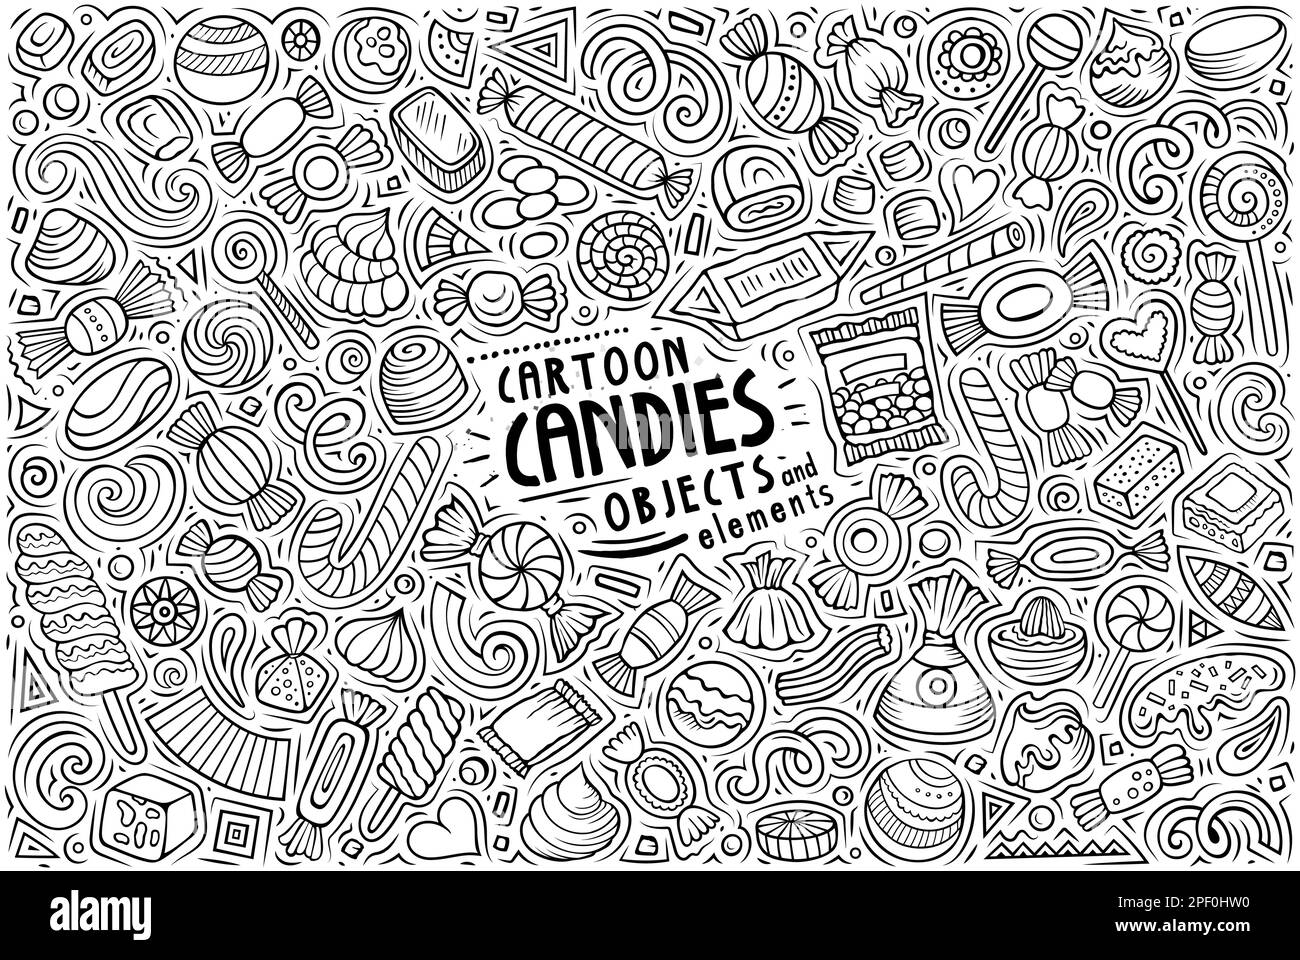 Line art vettore doodle cartone animato Set di oggetti tema Candies, oggetti e simboli Illustrazione Vettoriale